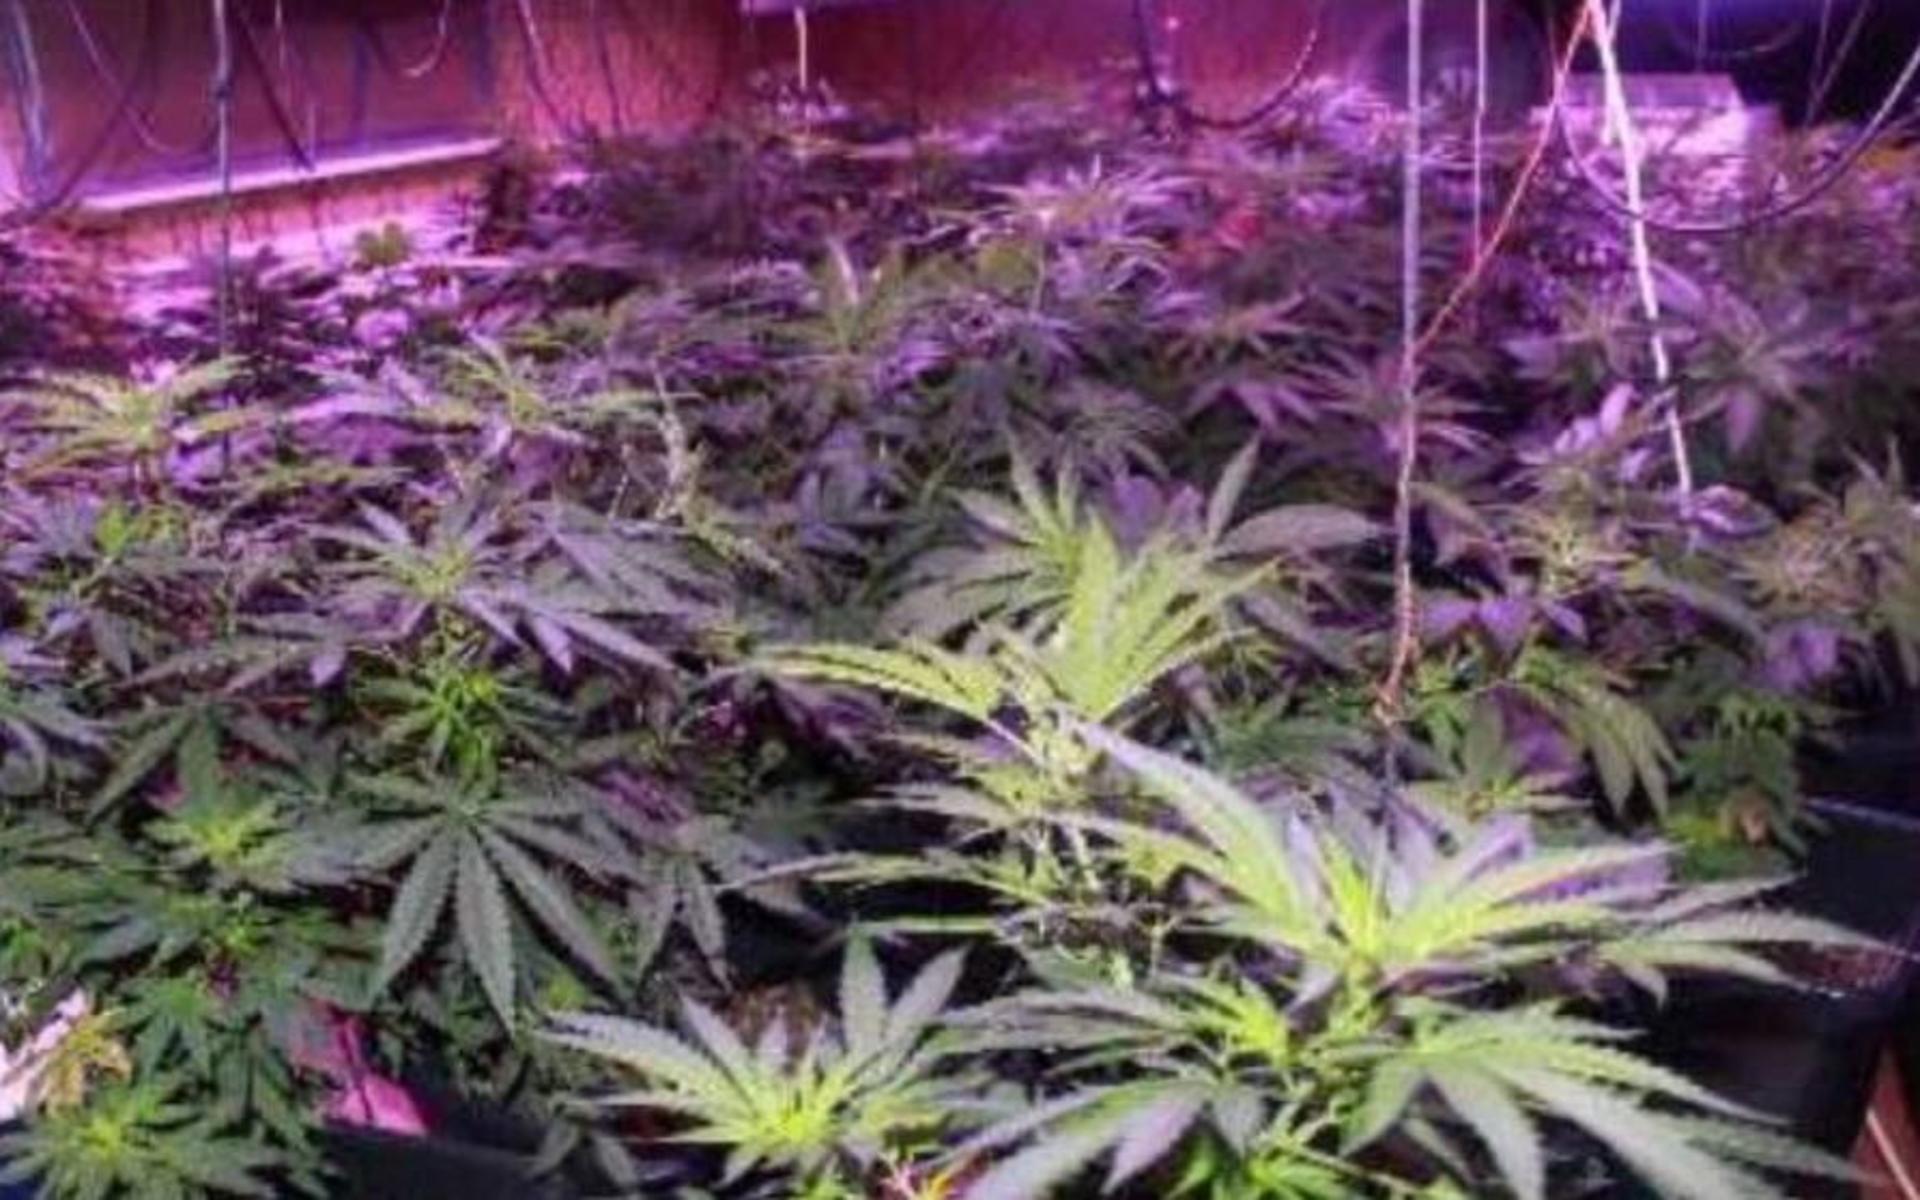 I 36-åringens dator hittade polisen bilder på en cannabisodling. Han åtalas för flera grova narkotikabrott, däribland försäljning, innehav och framställning.